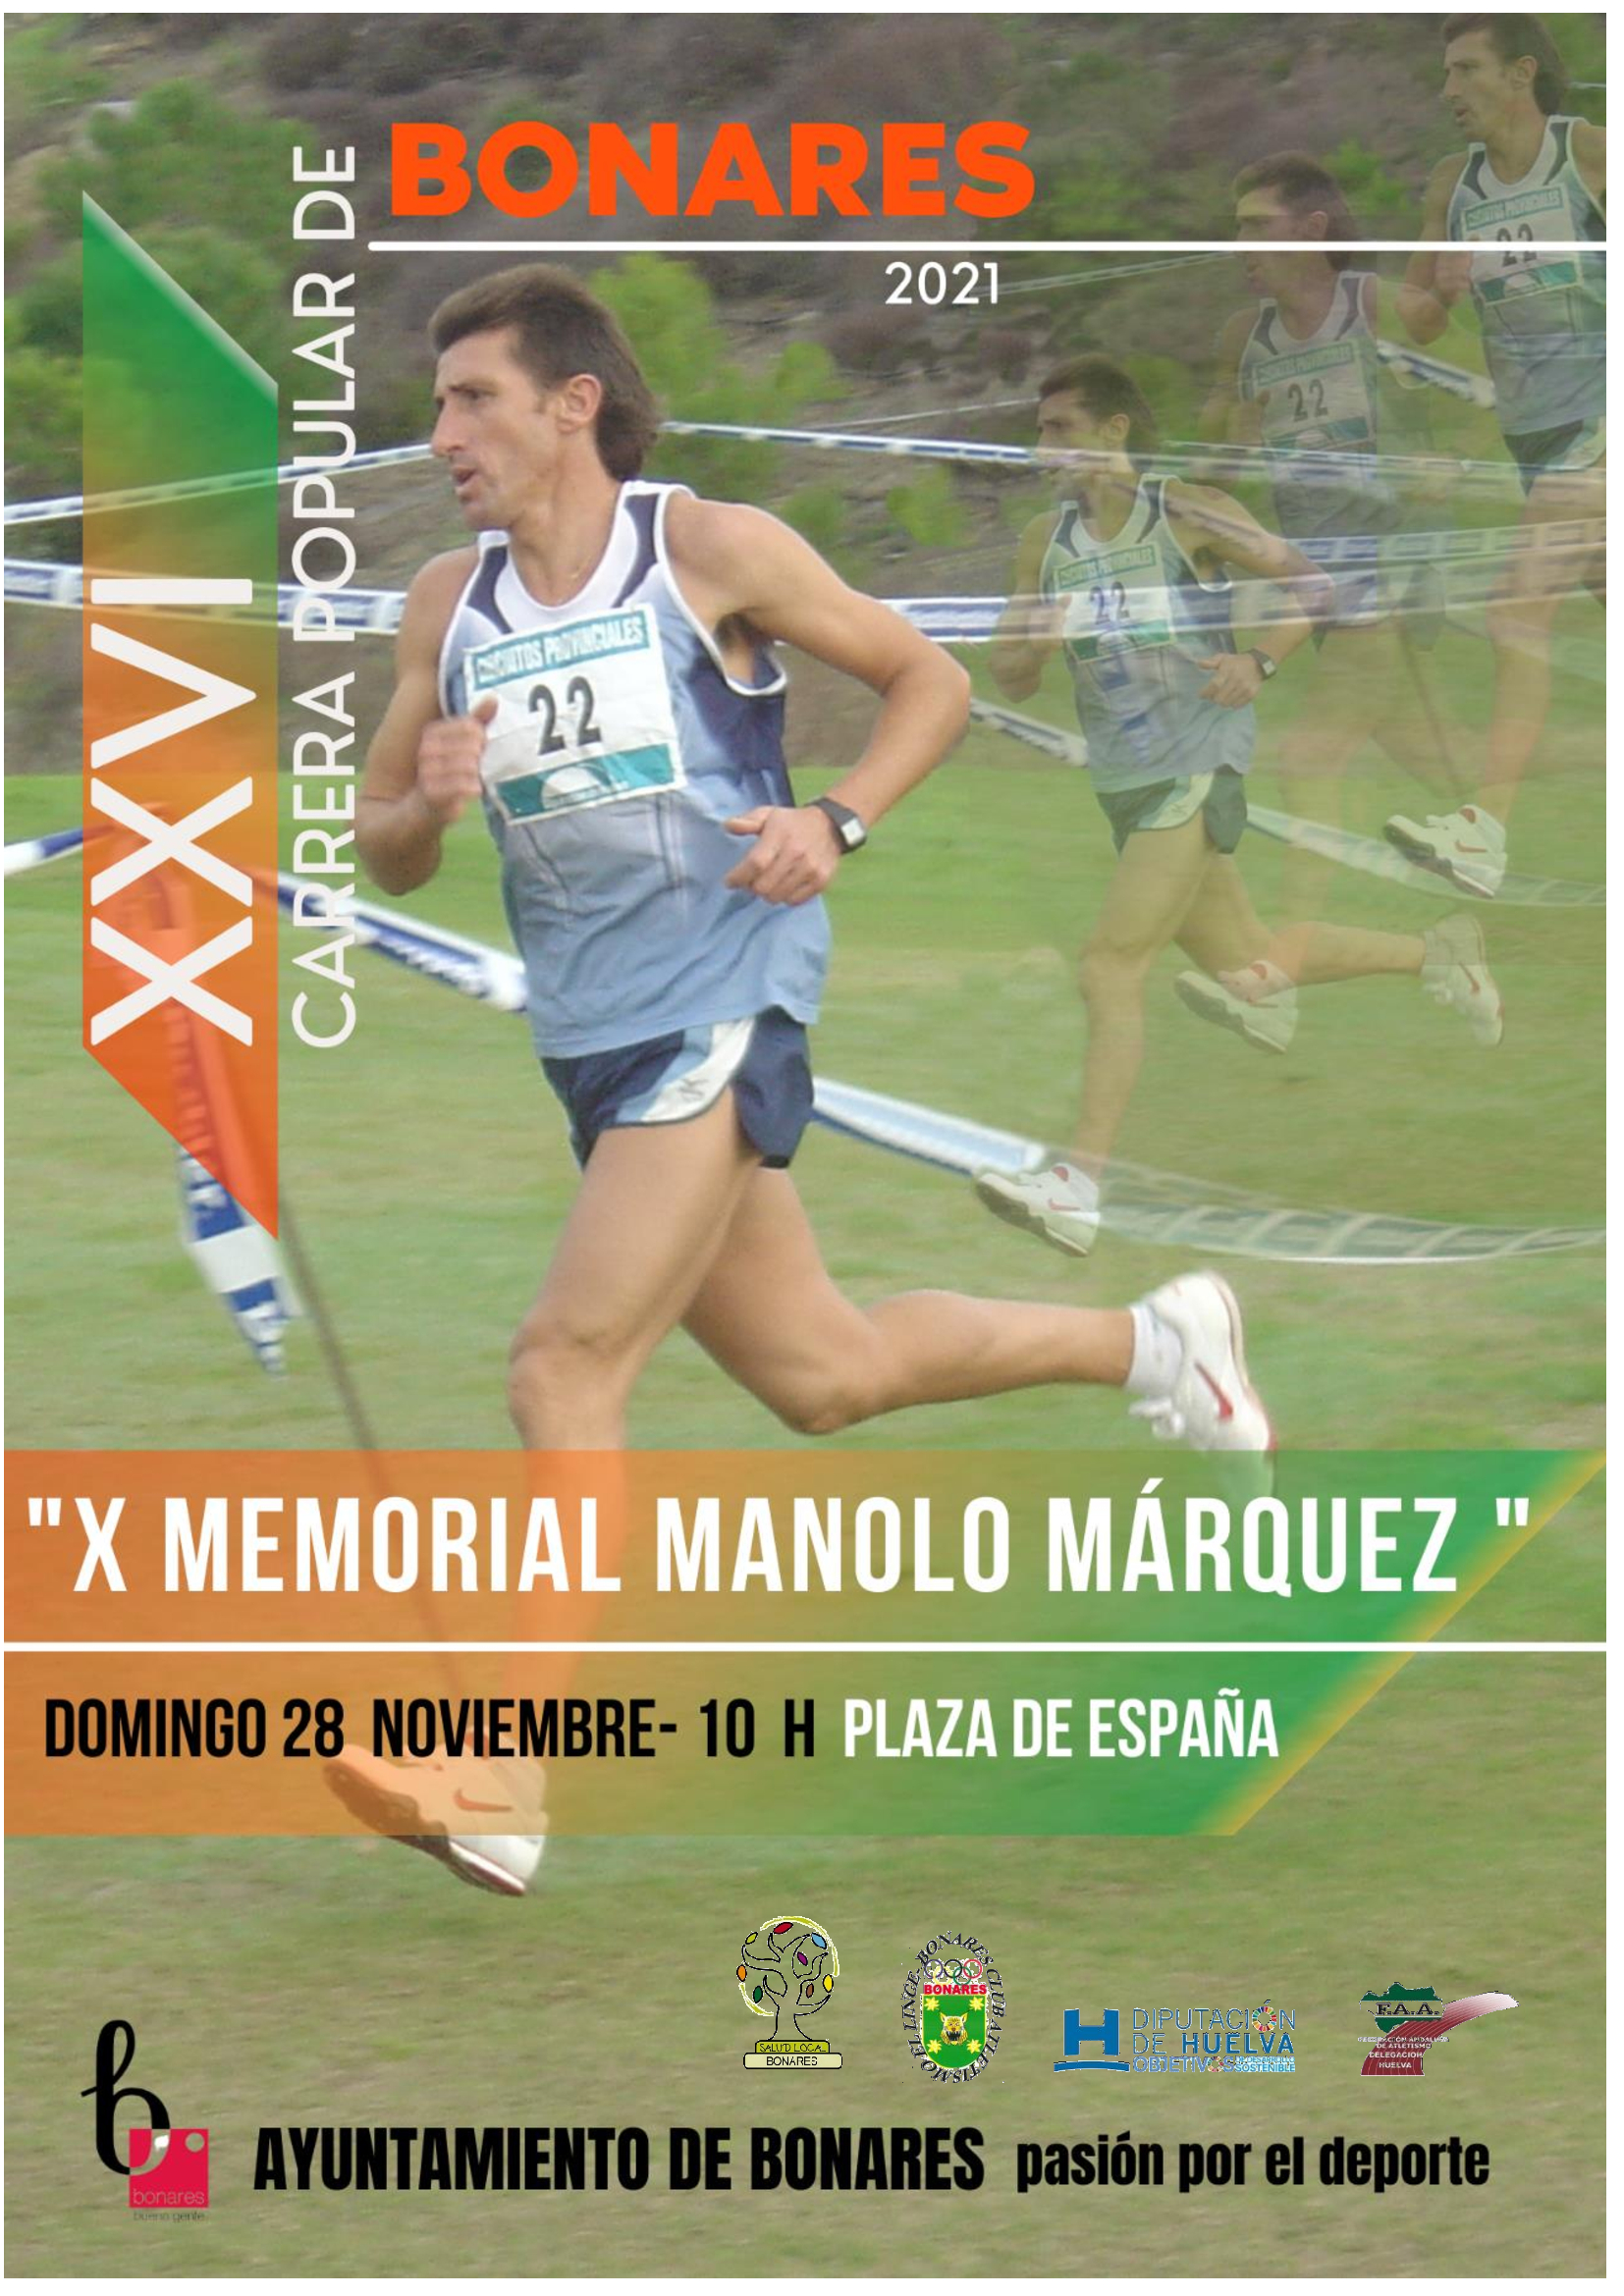 Memorial Manolo Marquez Bonares 2021